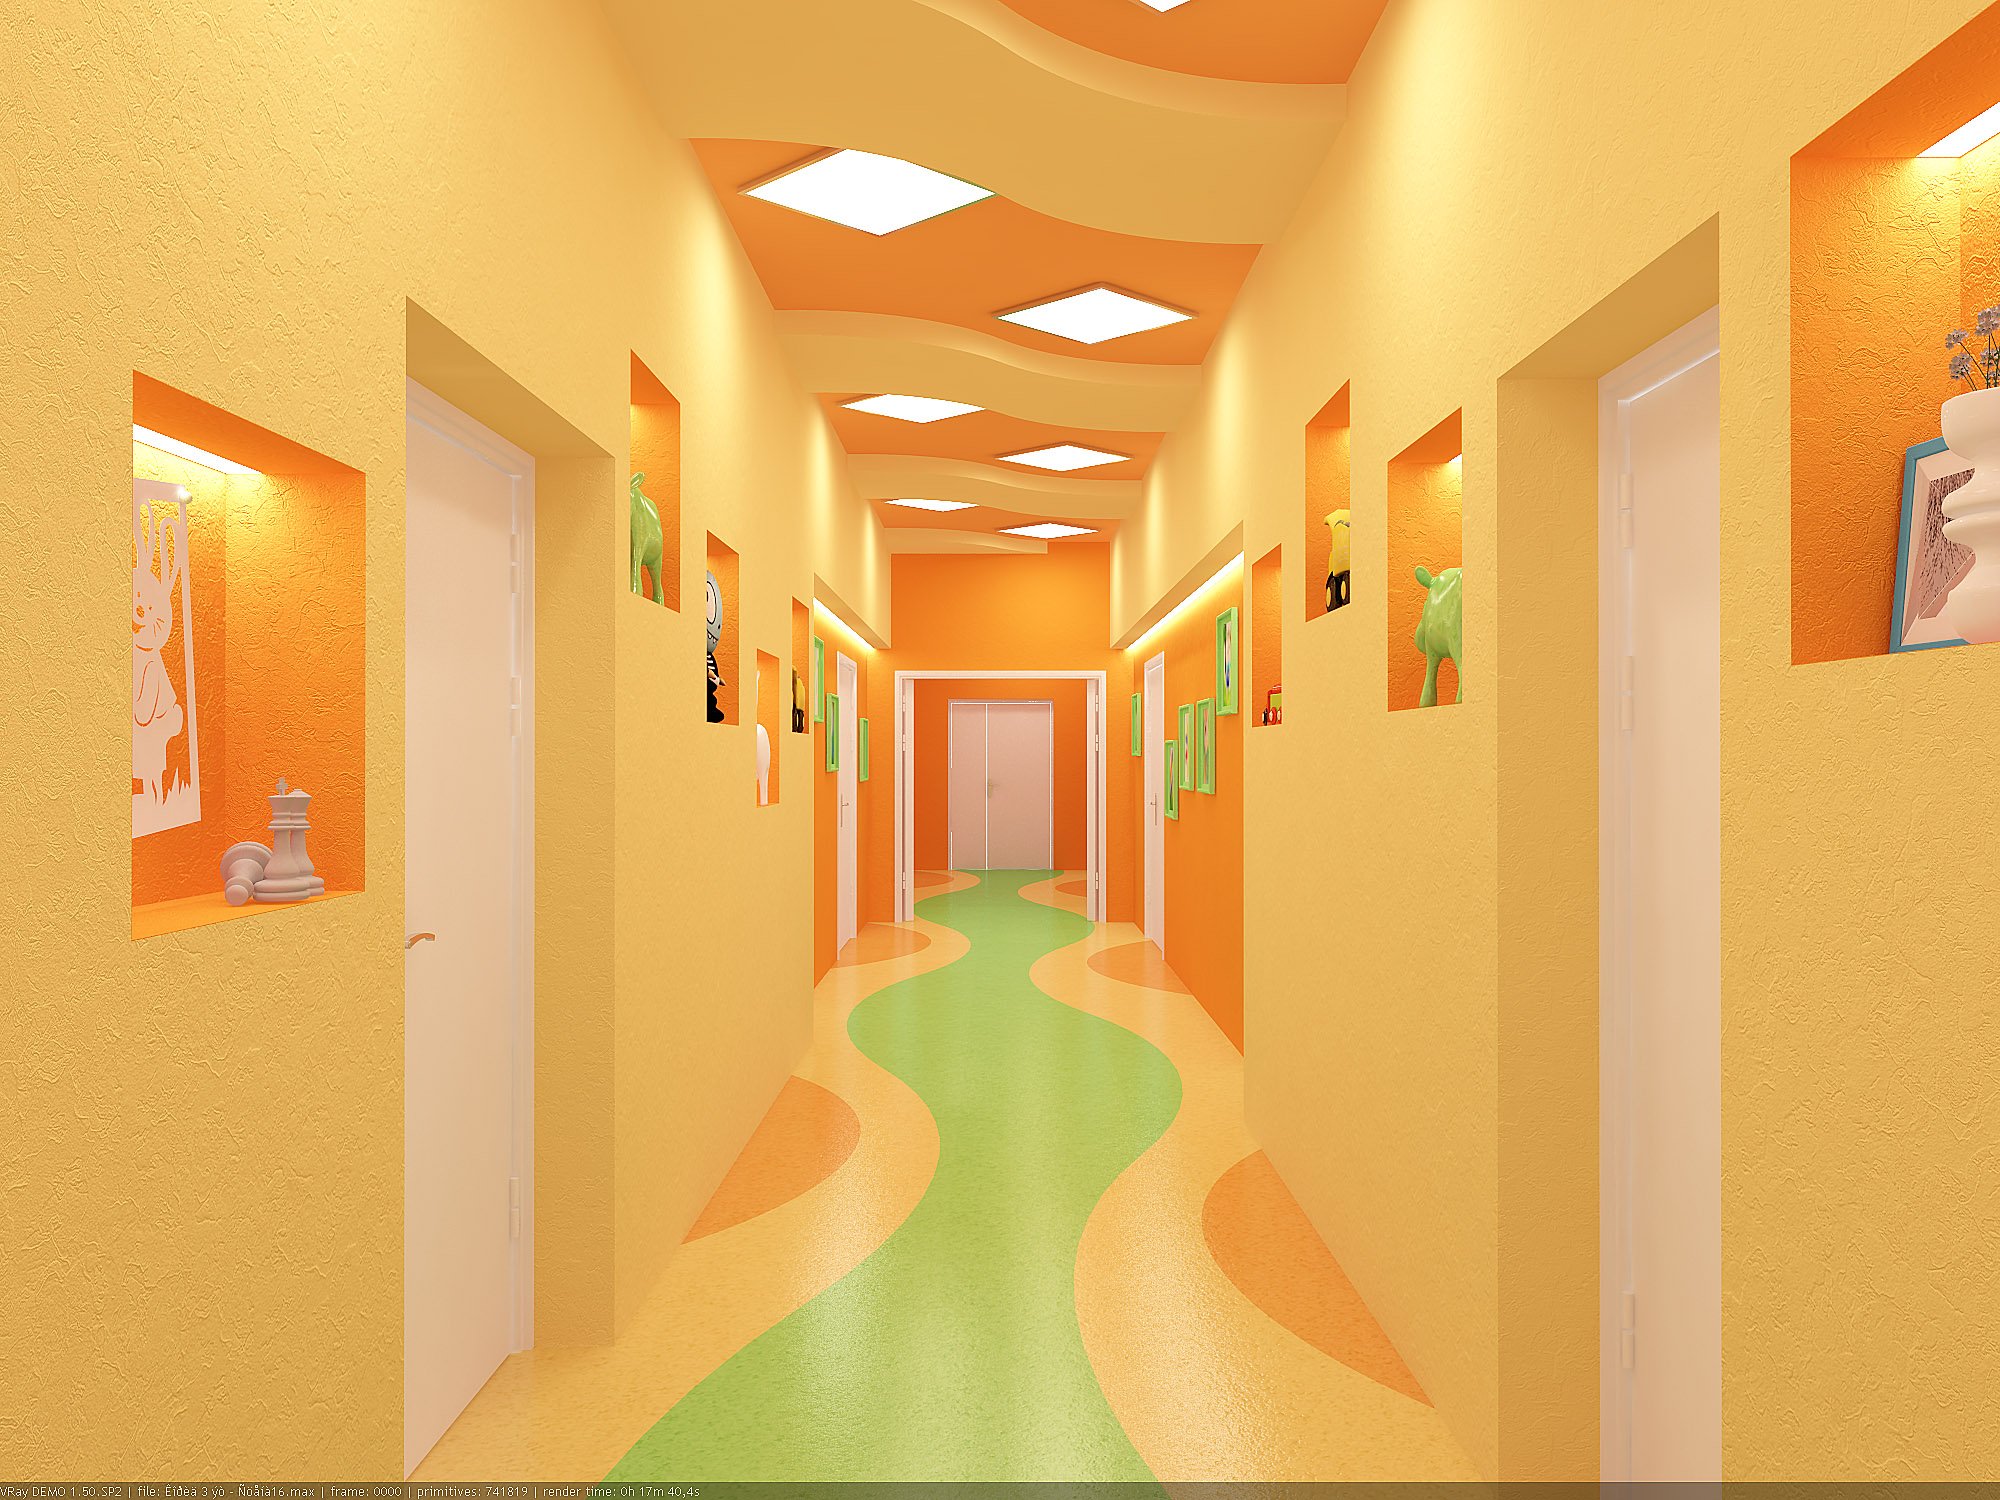 Оформление коридора в детском саду (69 фото)